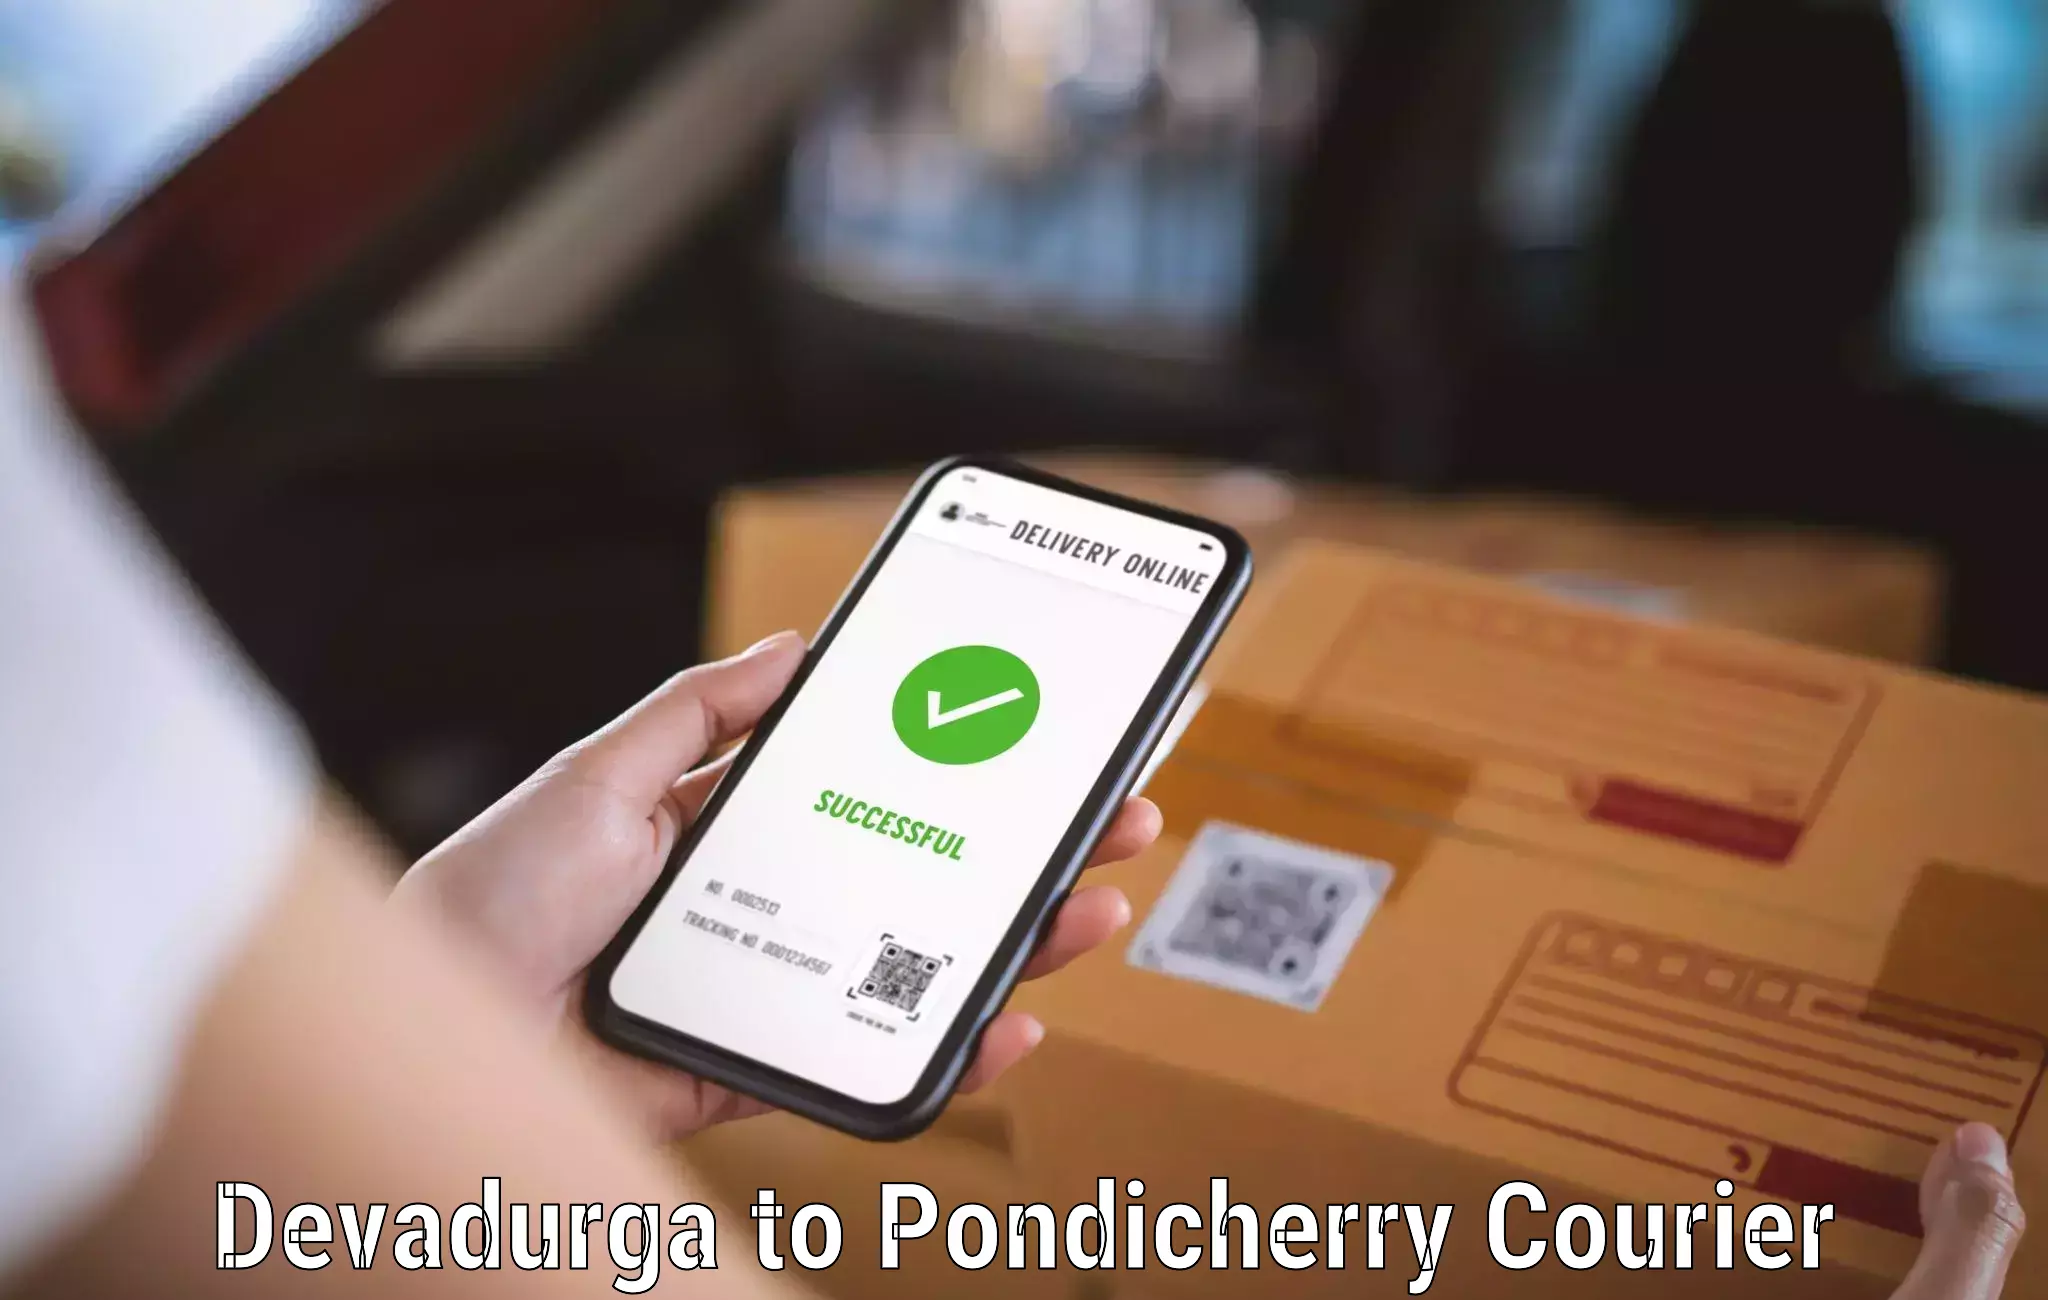 Urban courier service Devadurga to Pondicherry University